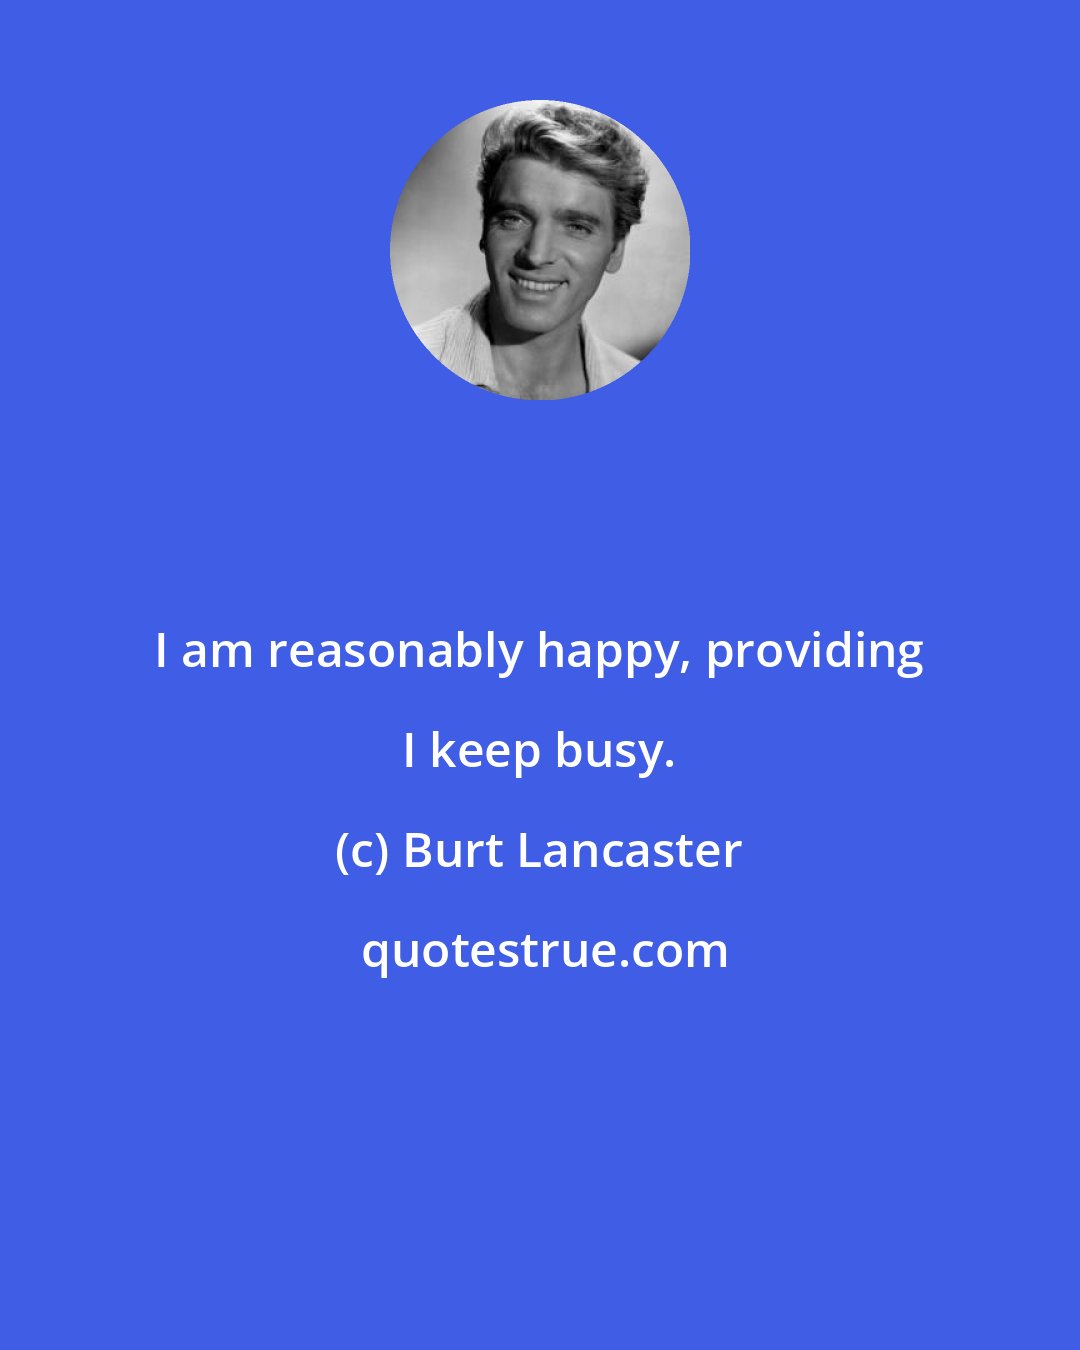 Burt Lancaster: I am reasonably happy, providing I keep busy.